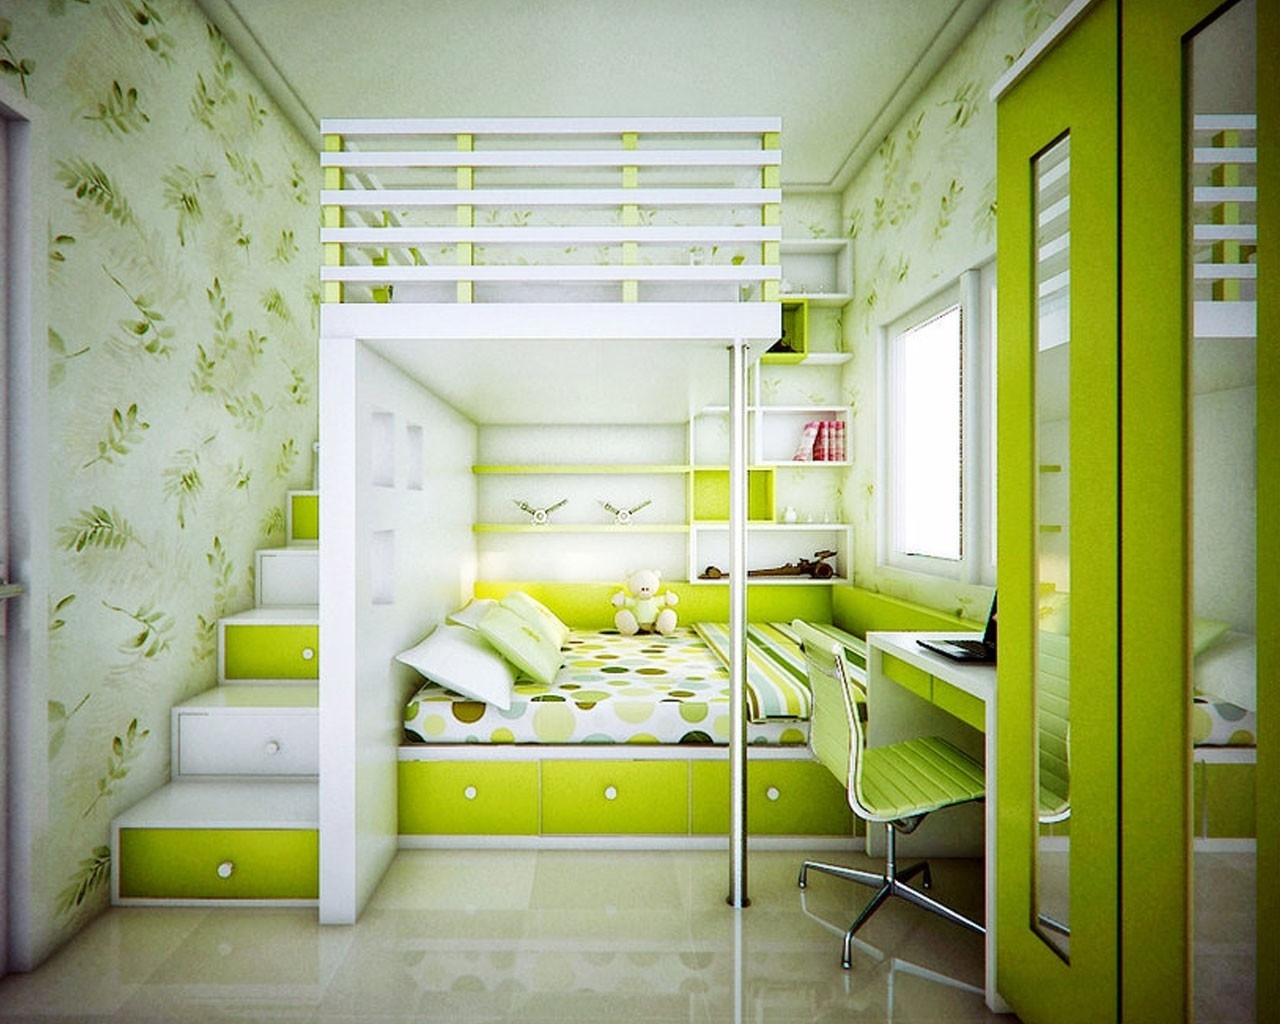 غرفة نوم وغرفة للأطفال في صورة واحدة غرفة الأفكار